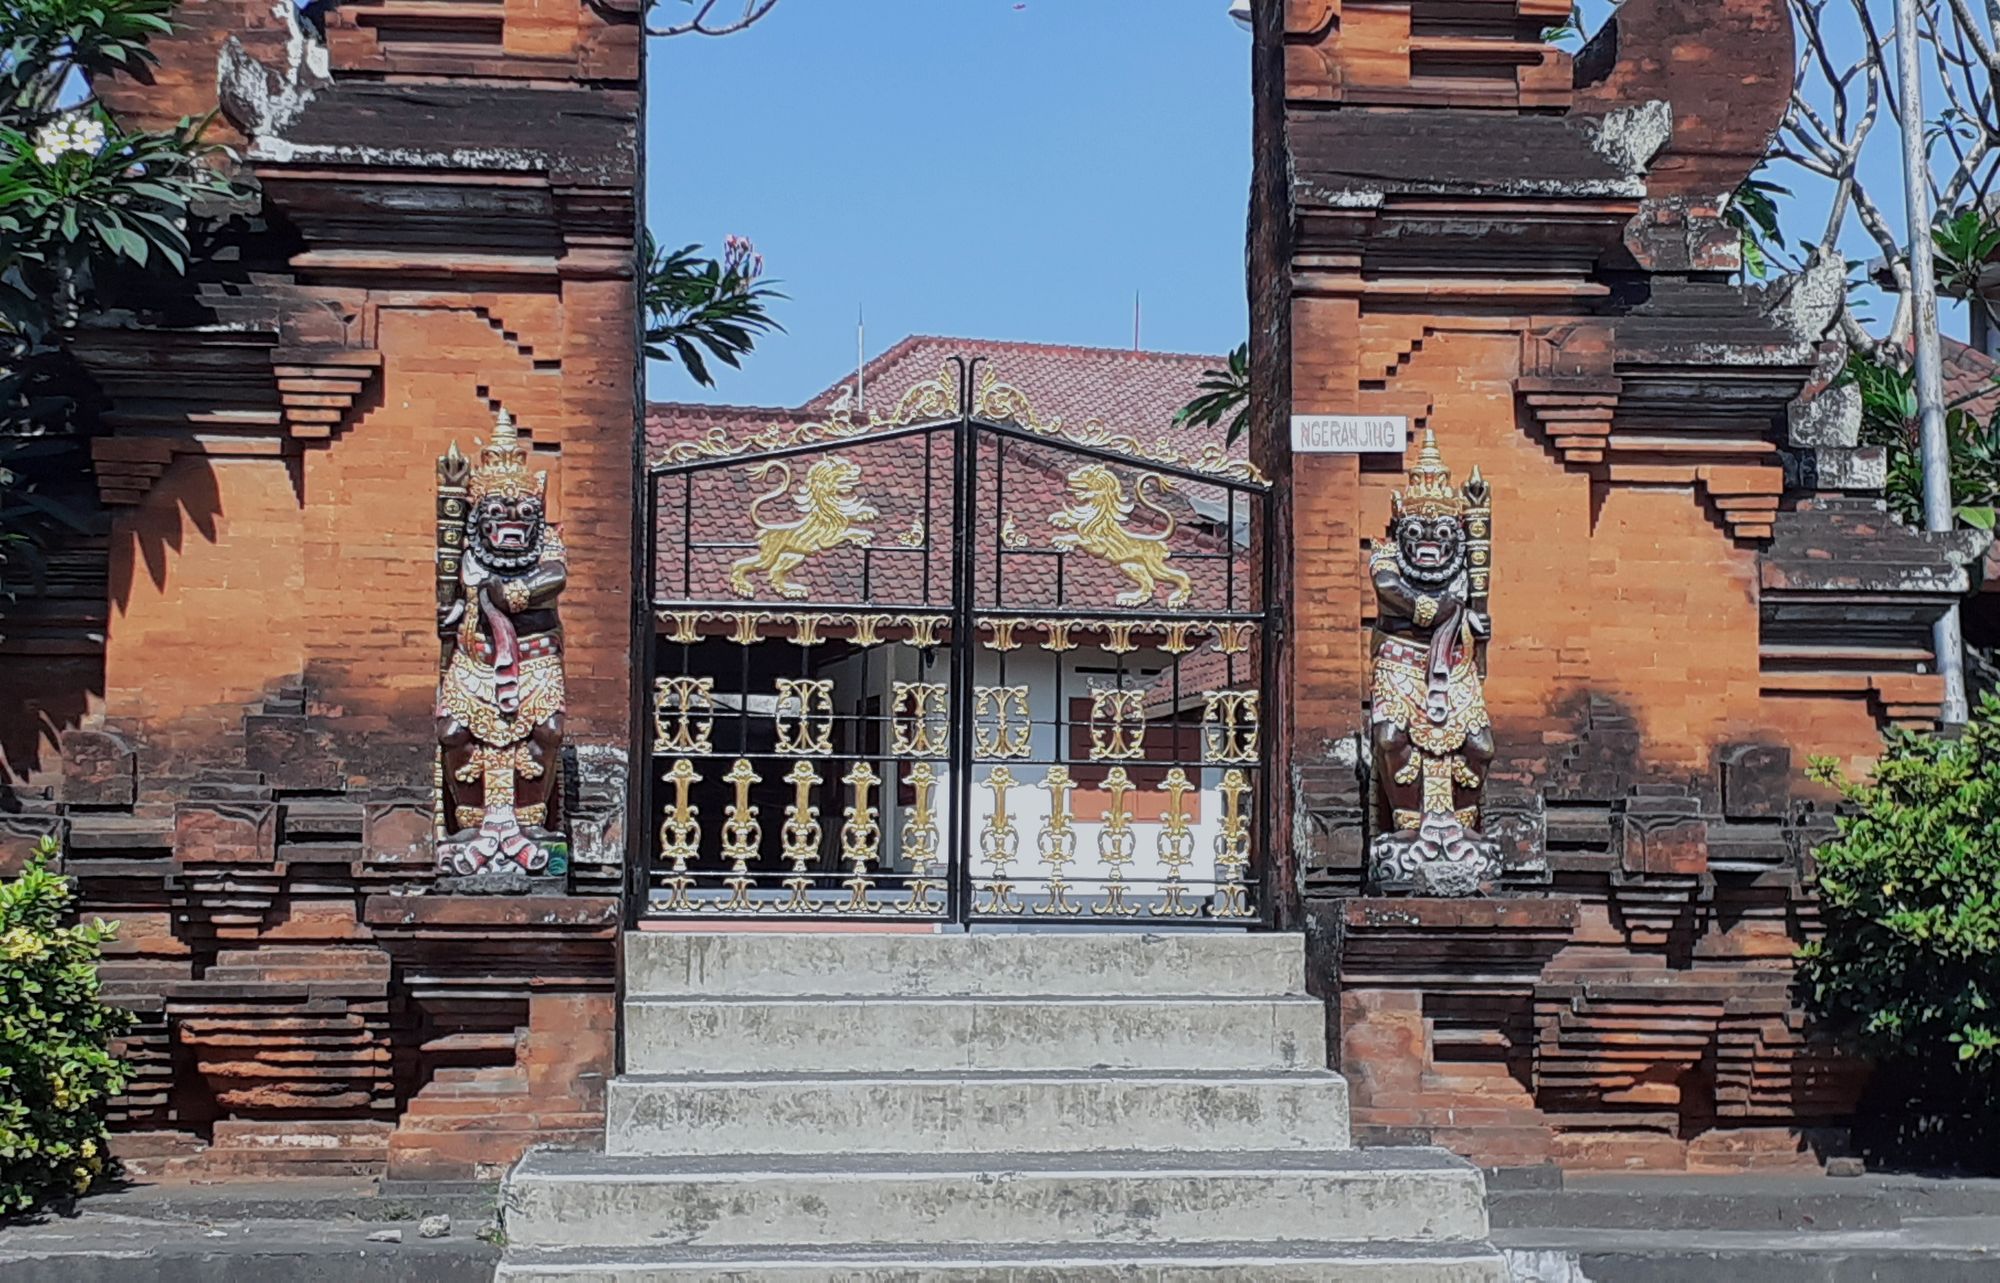 Mengenal Dwarapala, Patung Penjaga Tempat Suci di Bali